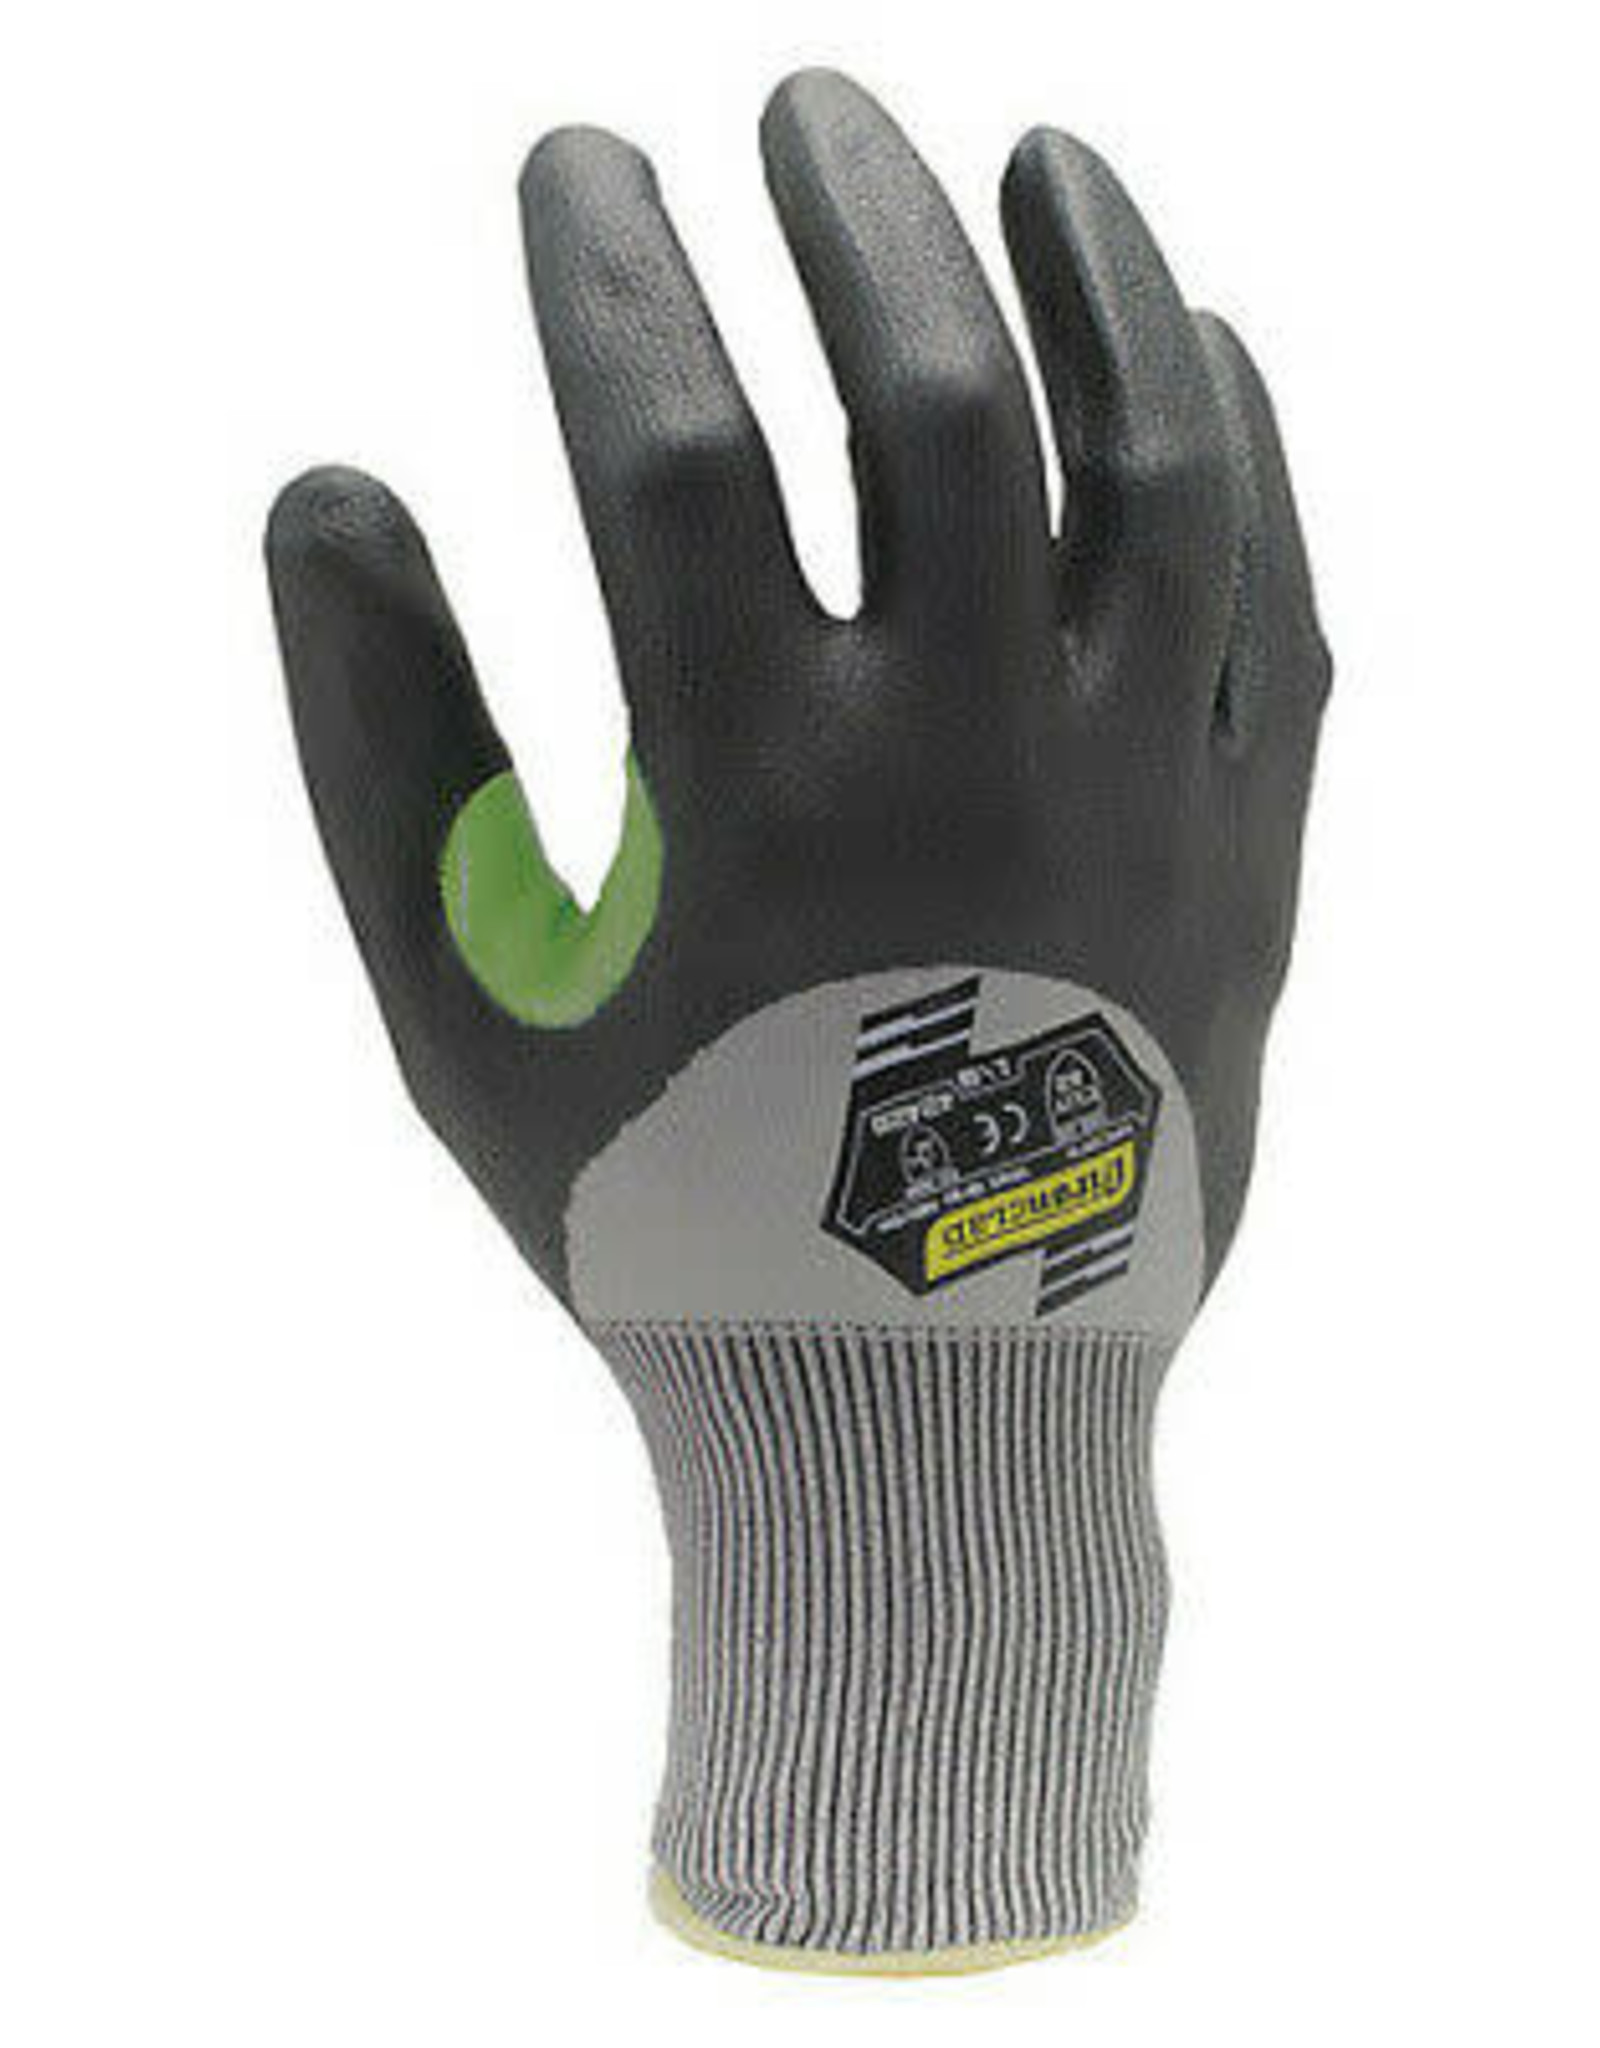 Ironclad Cut Resistant Gloves, A2 Cut Level, SZ. Large